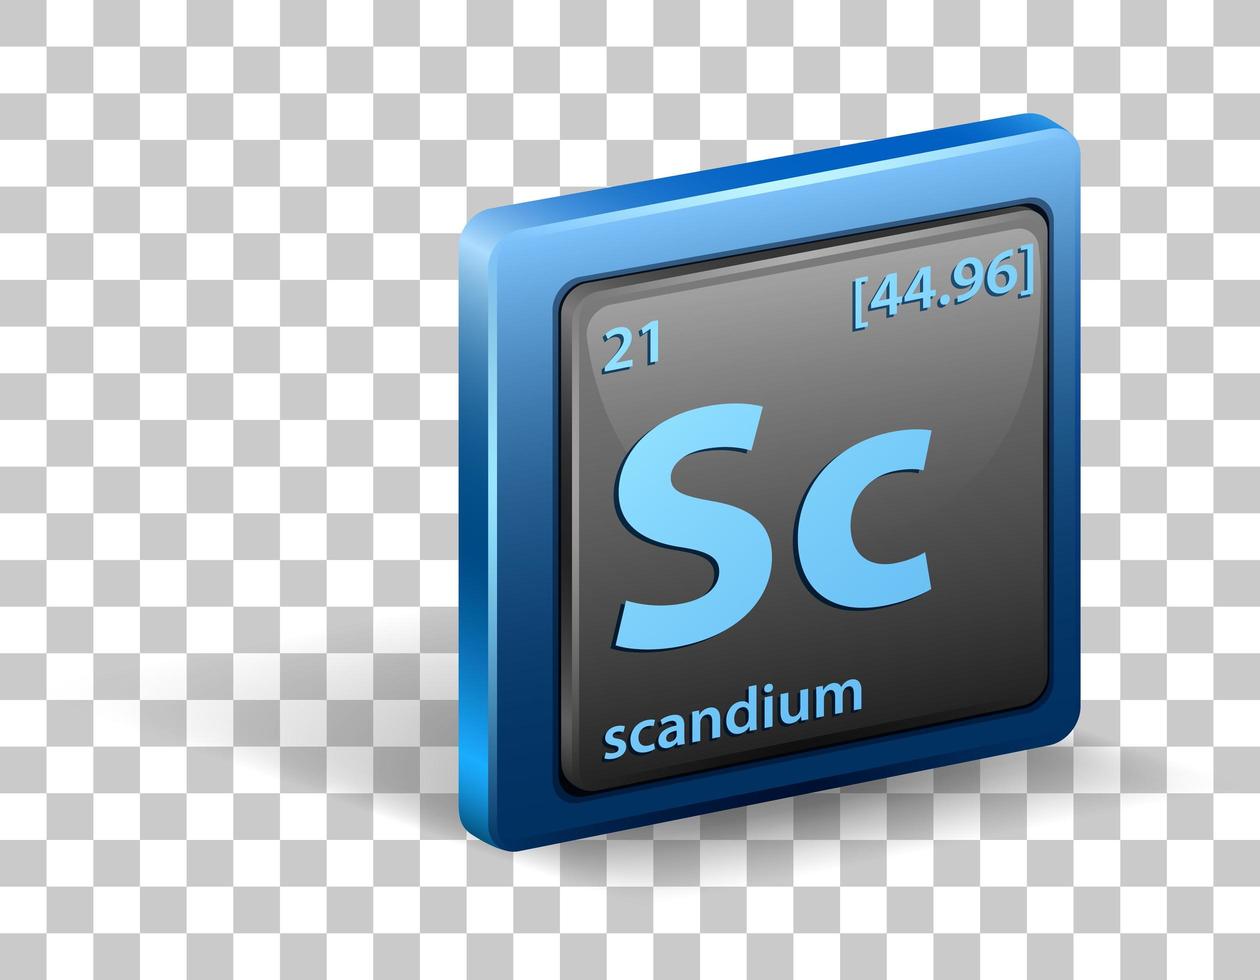 élément chimique scandium. symbole chimique avec numéro atomique et masse atomique. vecteur